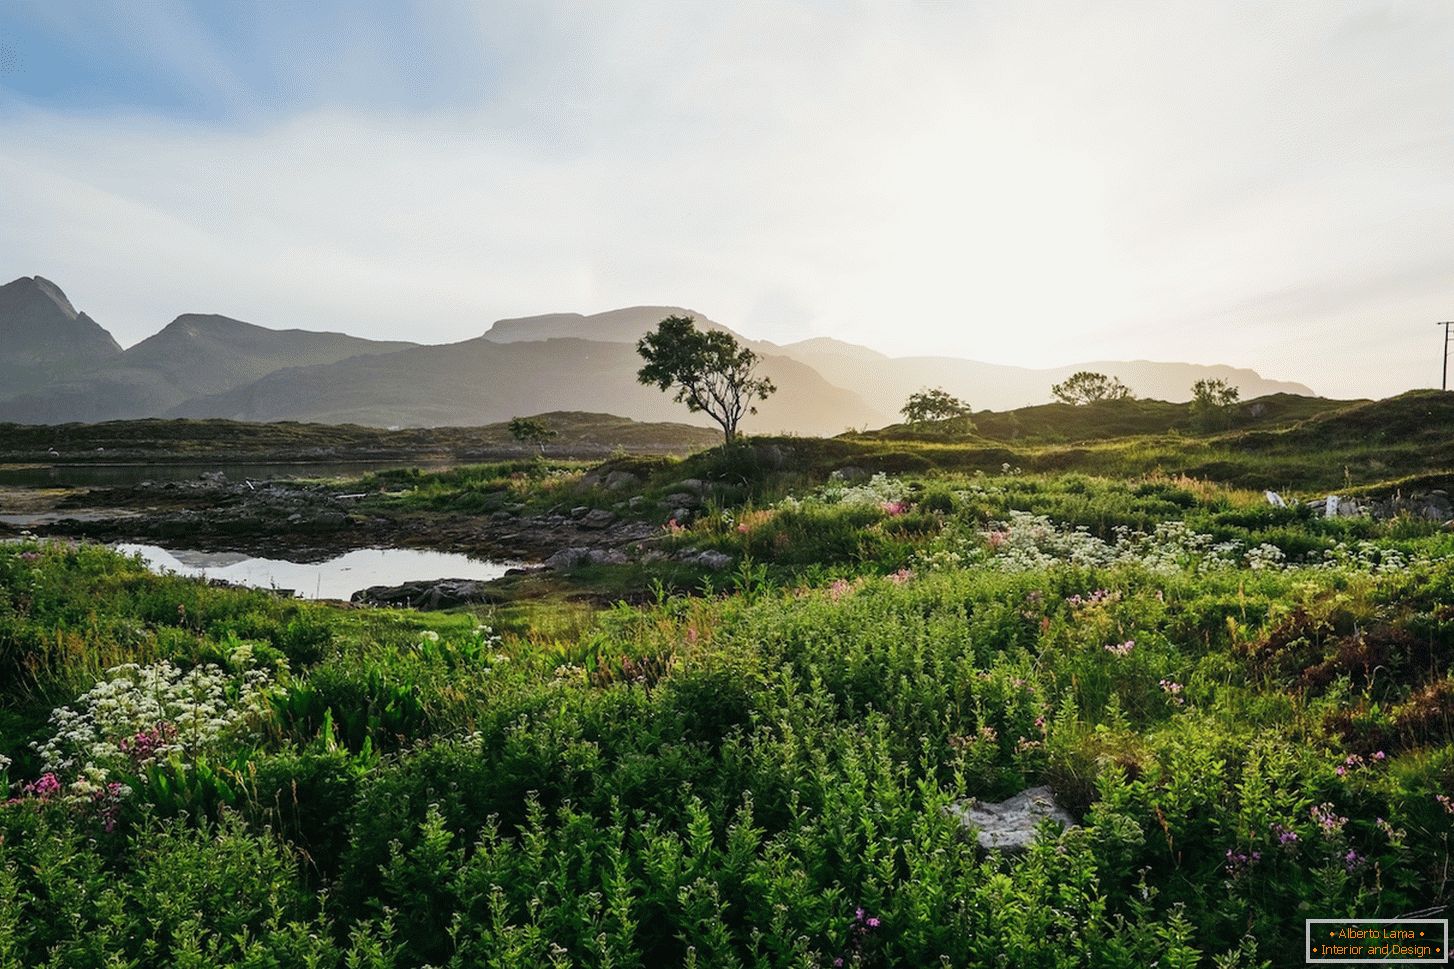 Juicy landscape of Norway fields